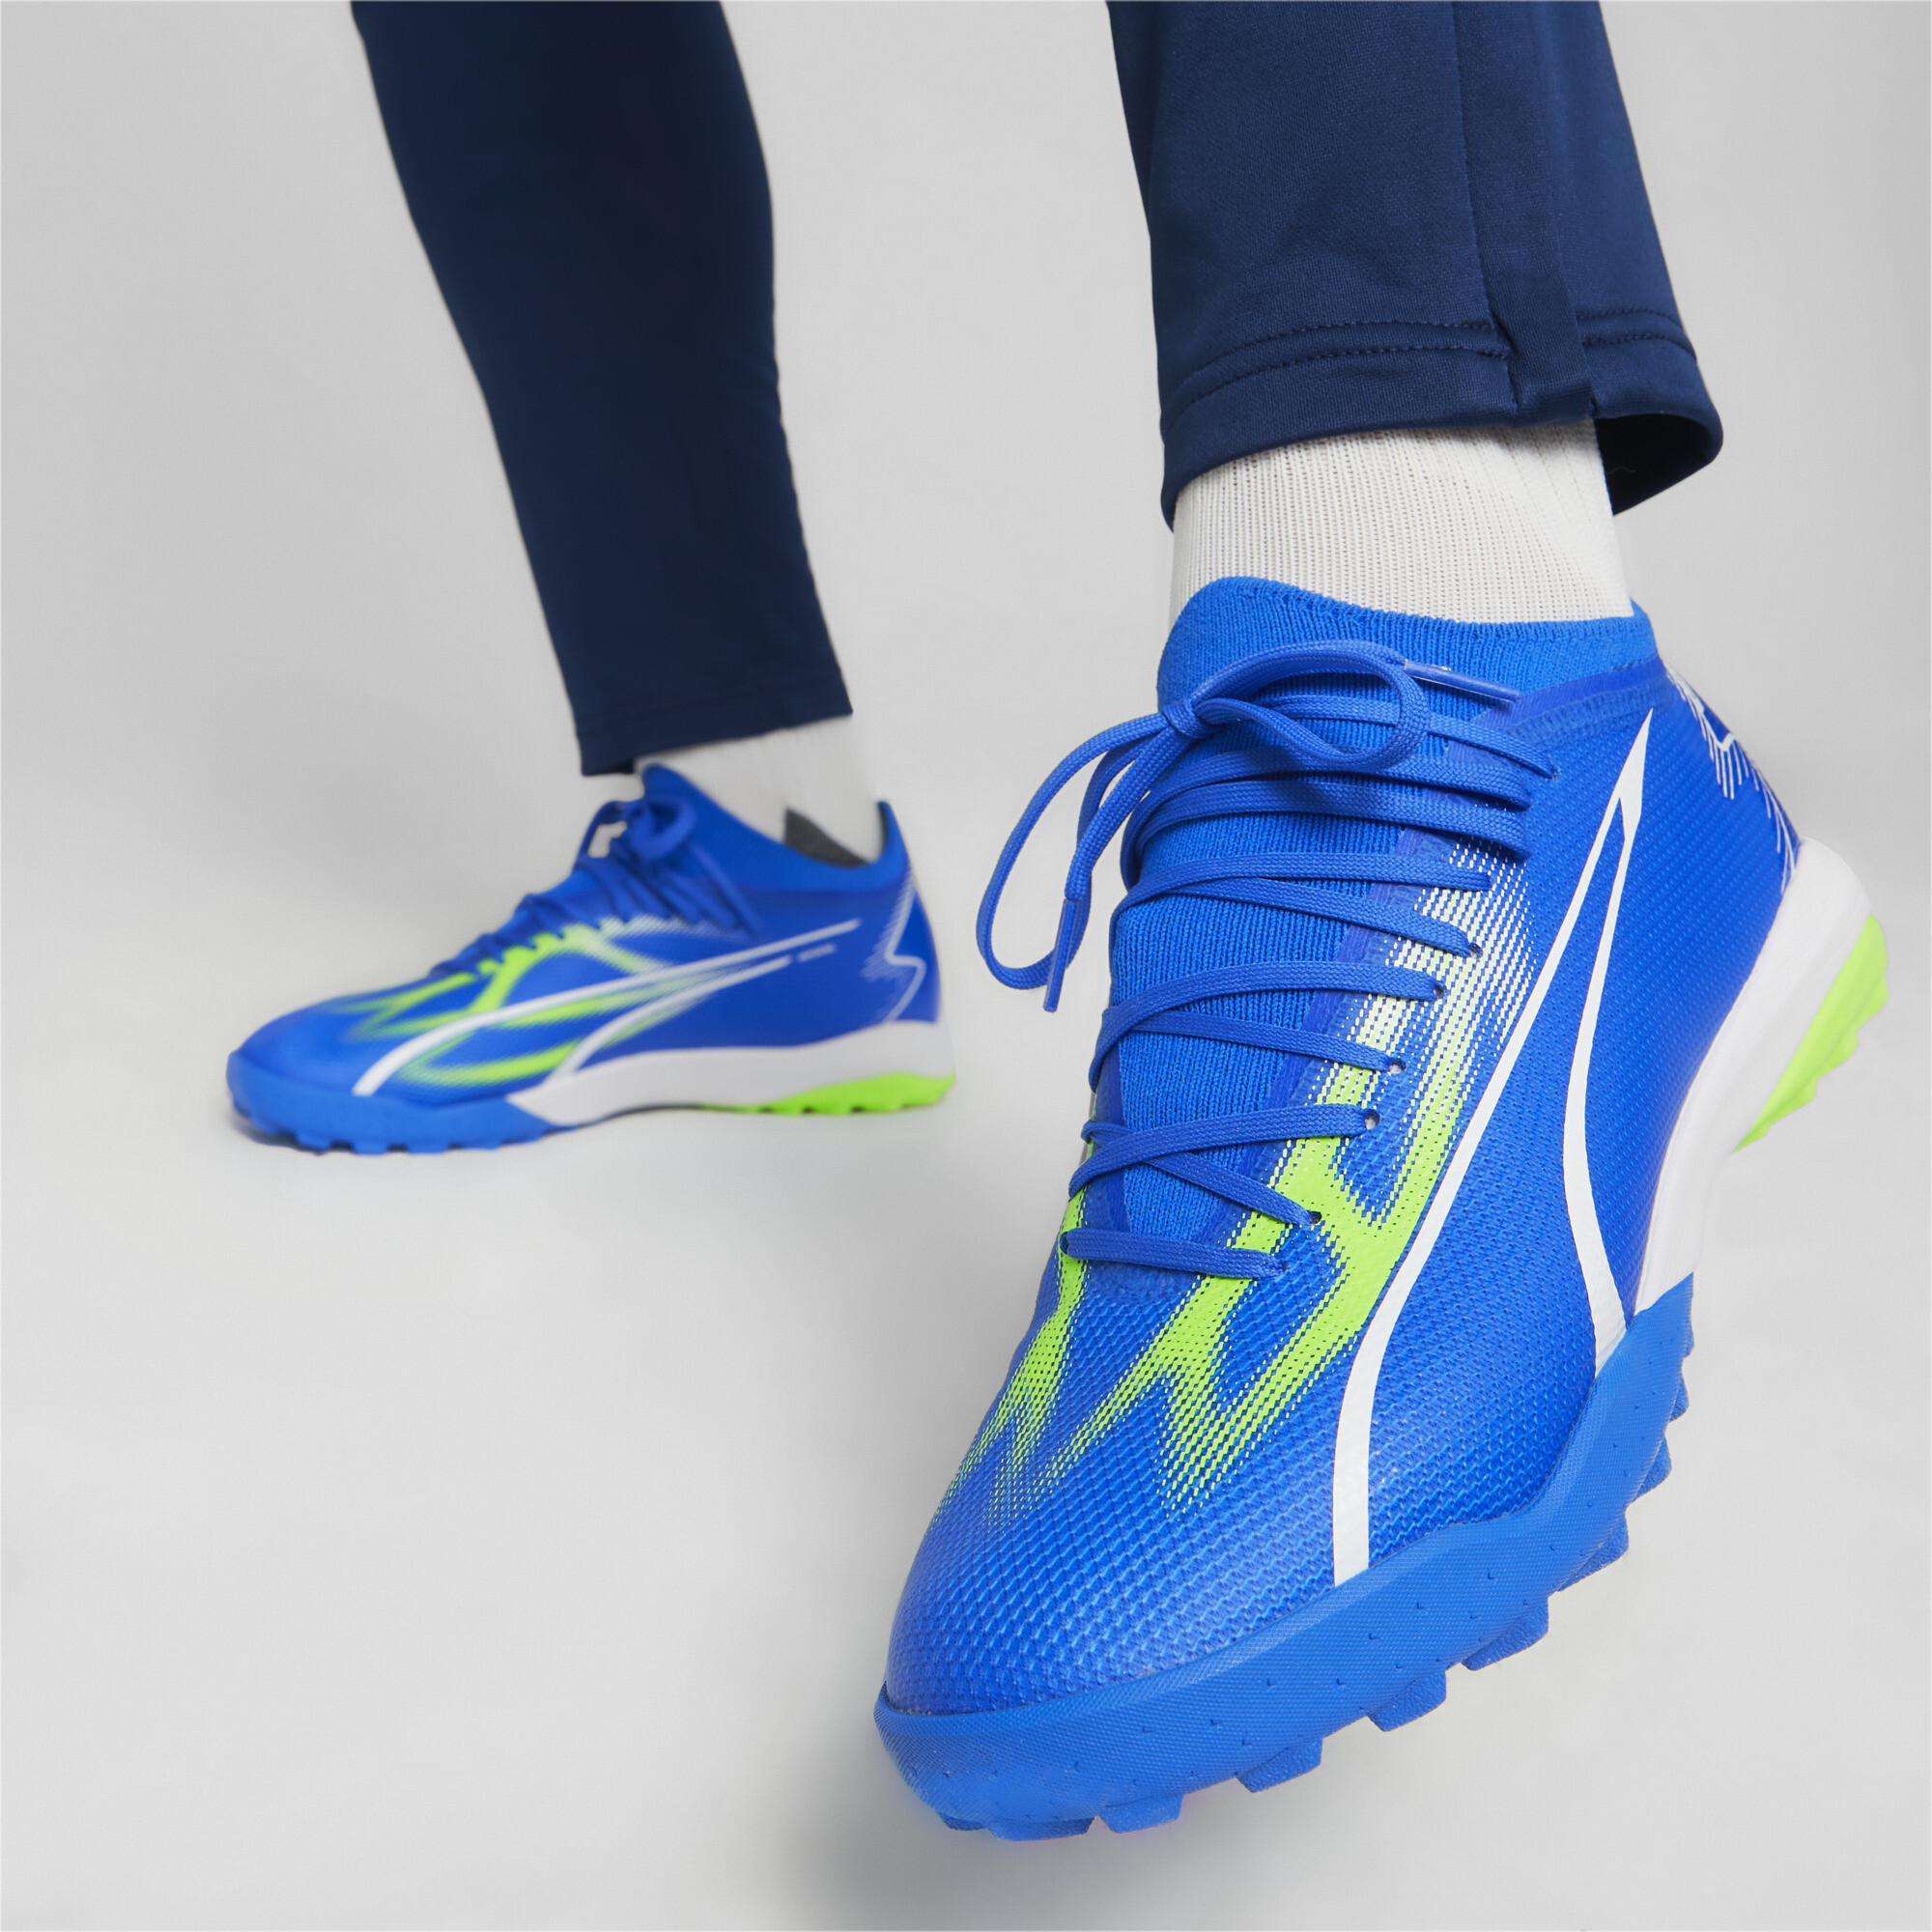 Men's PUMA ULTRA MATCH TT Football Boots In Blue, Size EU 42